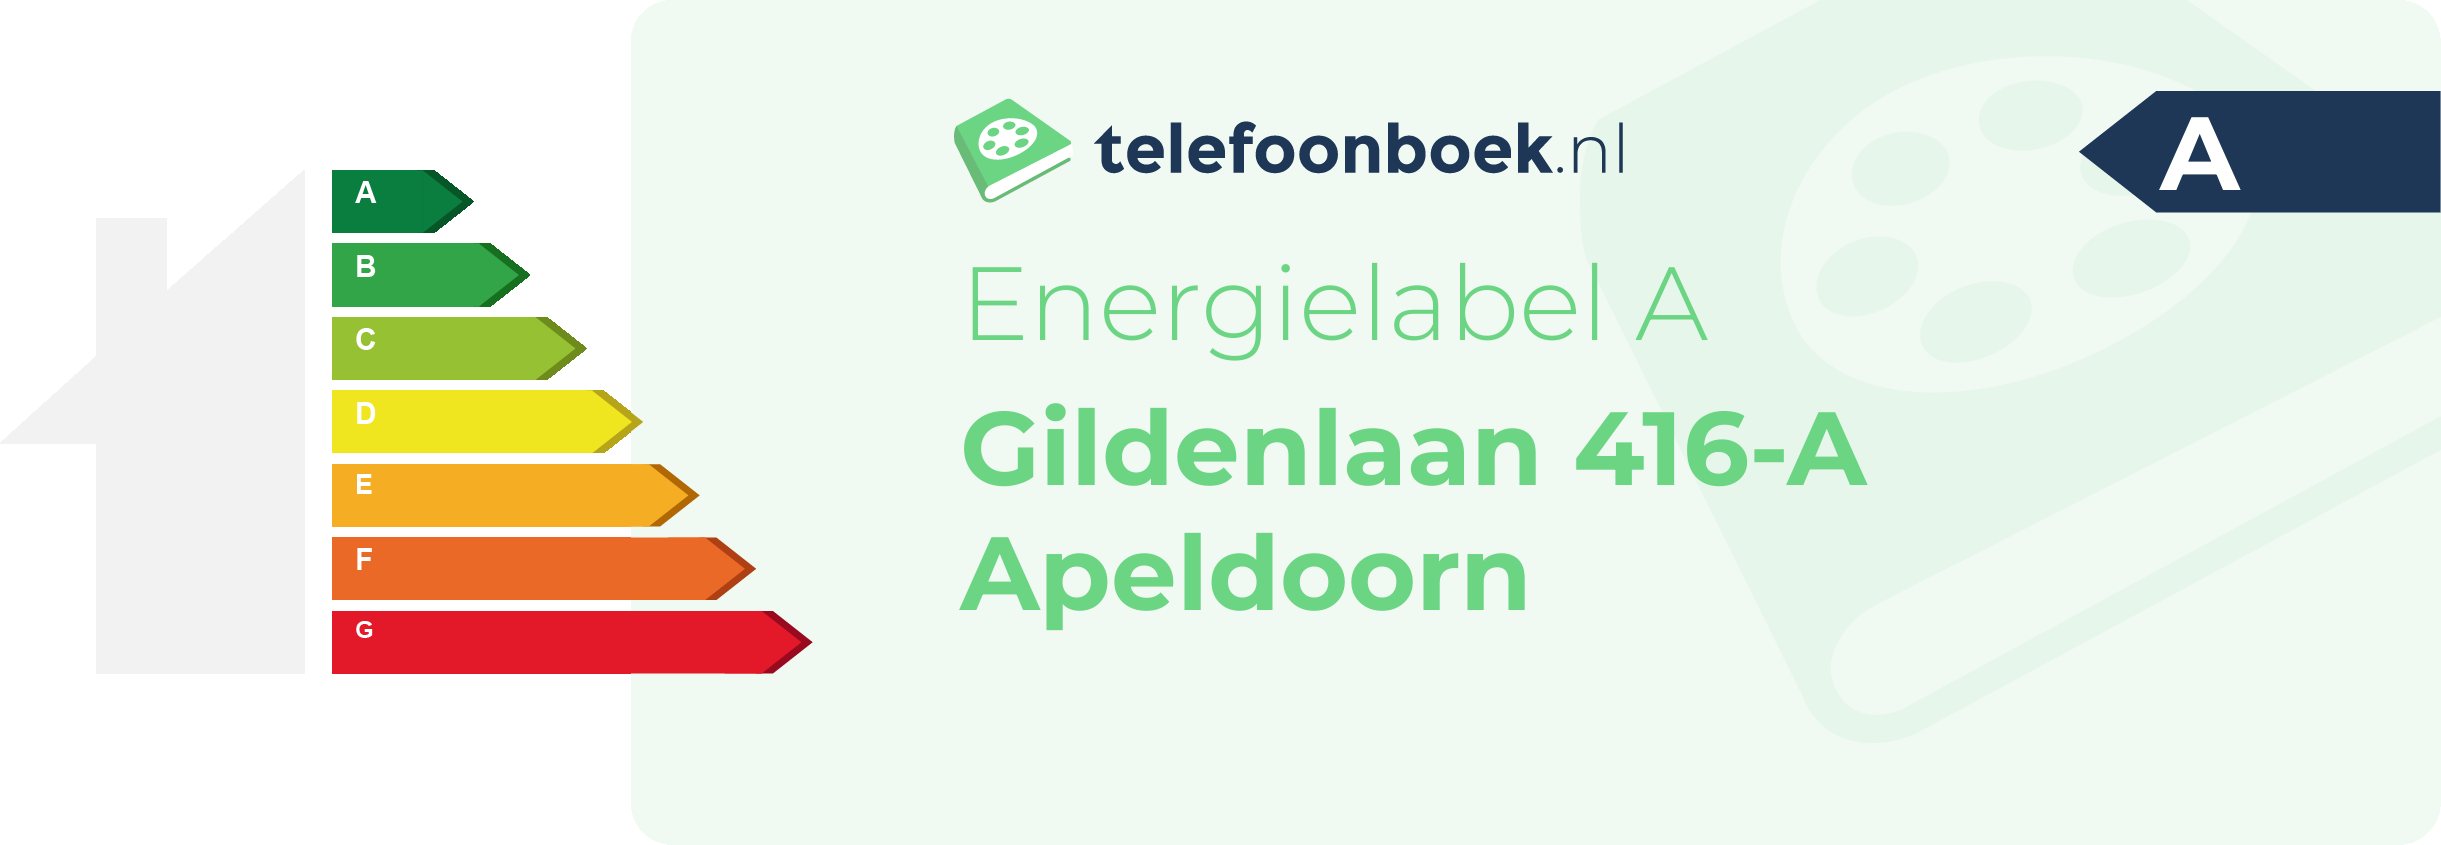 Energielabel Gildenlaan 416-A Apeldoorn